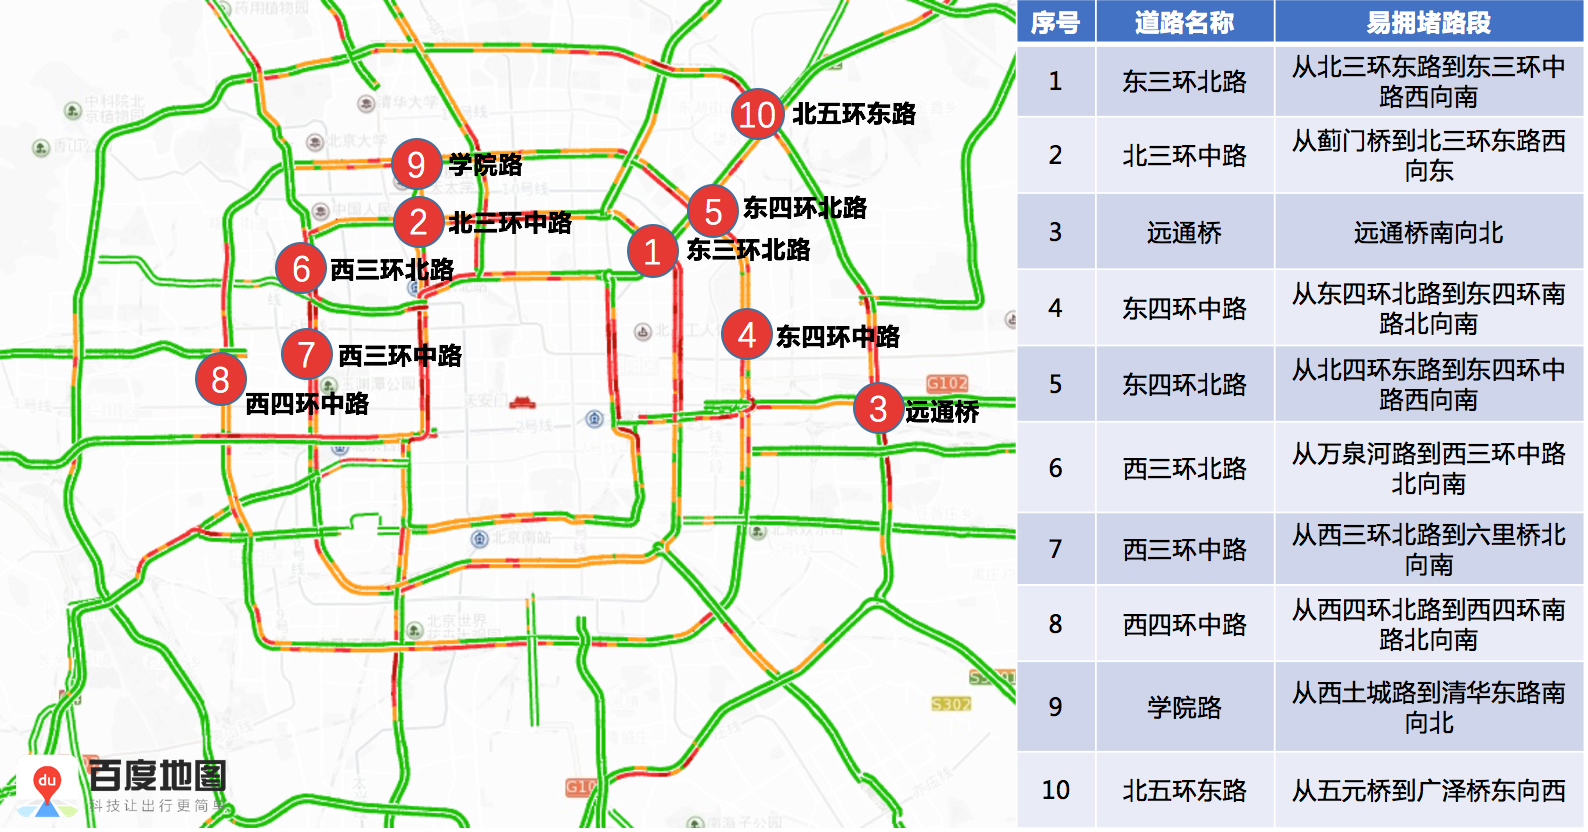 北京交警发布春运机场火车站交通趋势图 躲避拥堵必看!